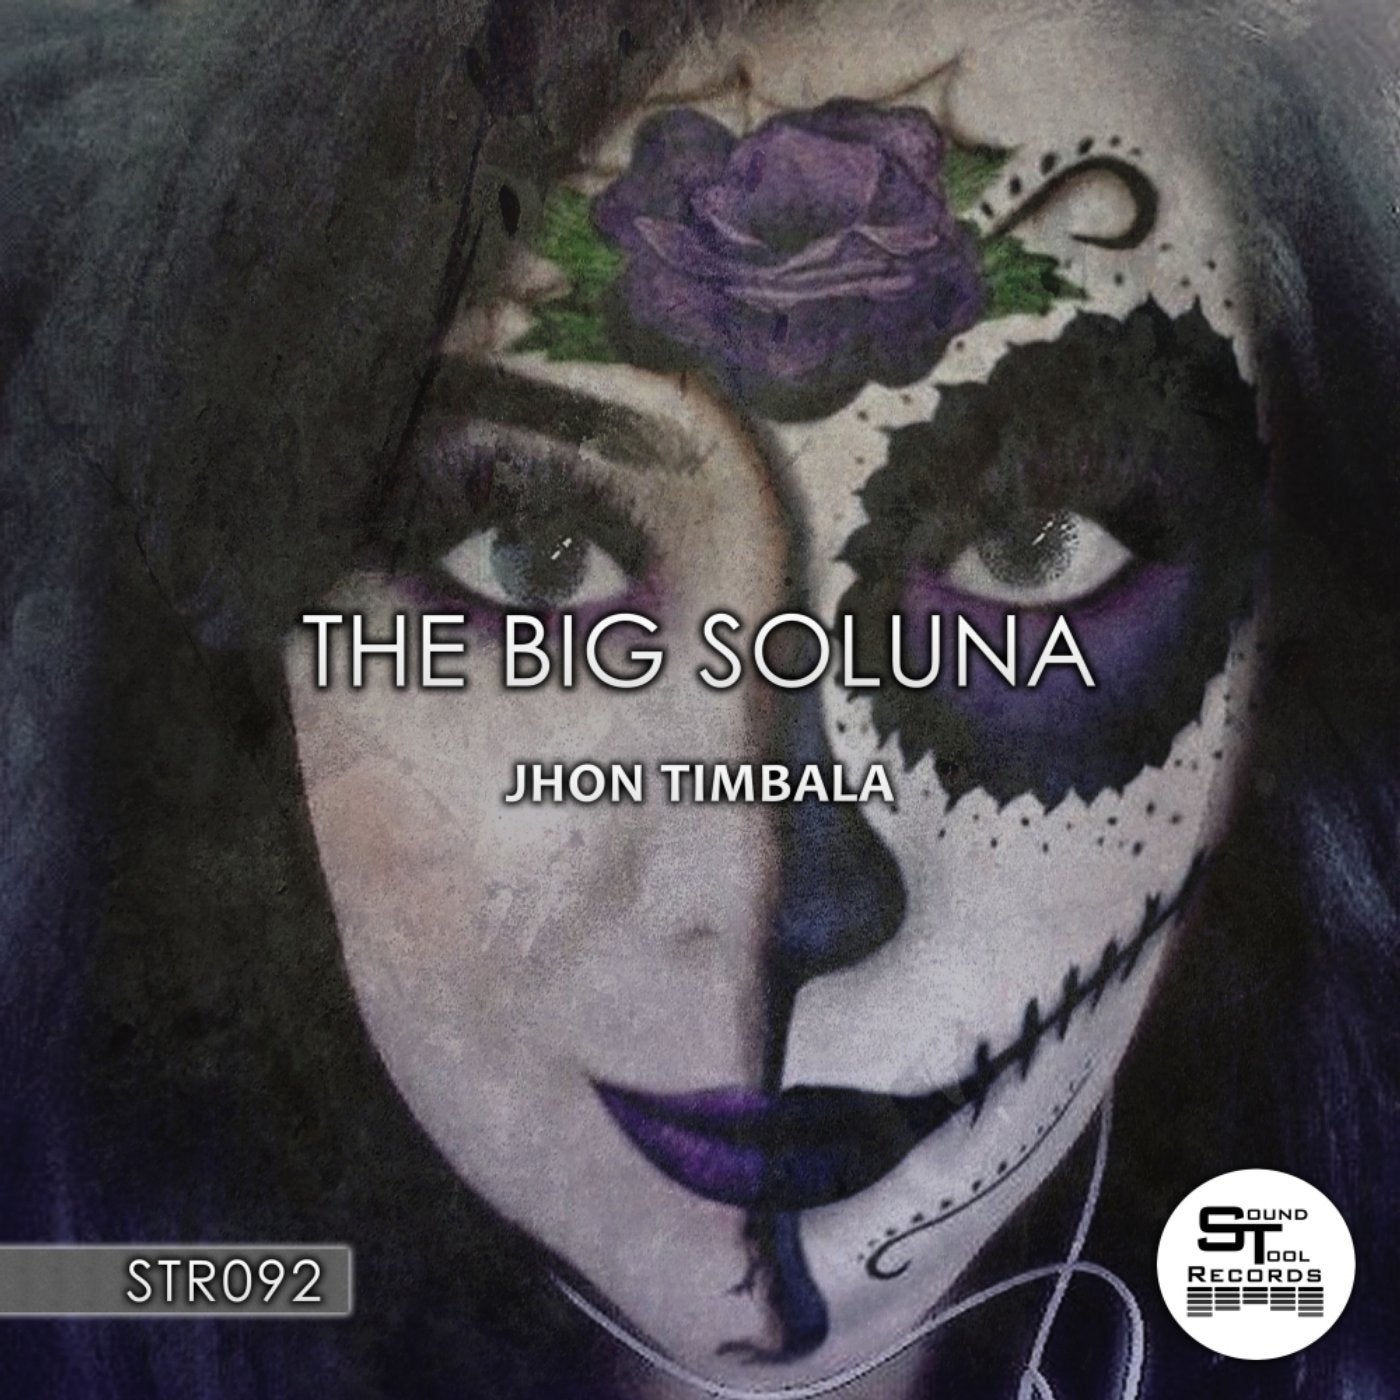 The Big Soluna